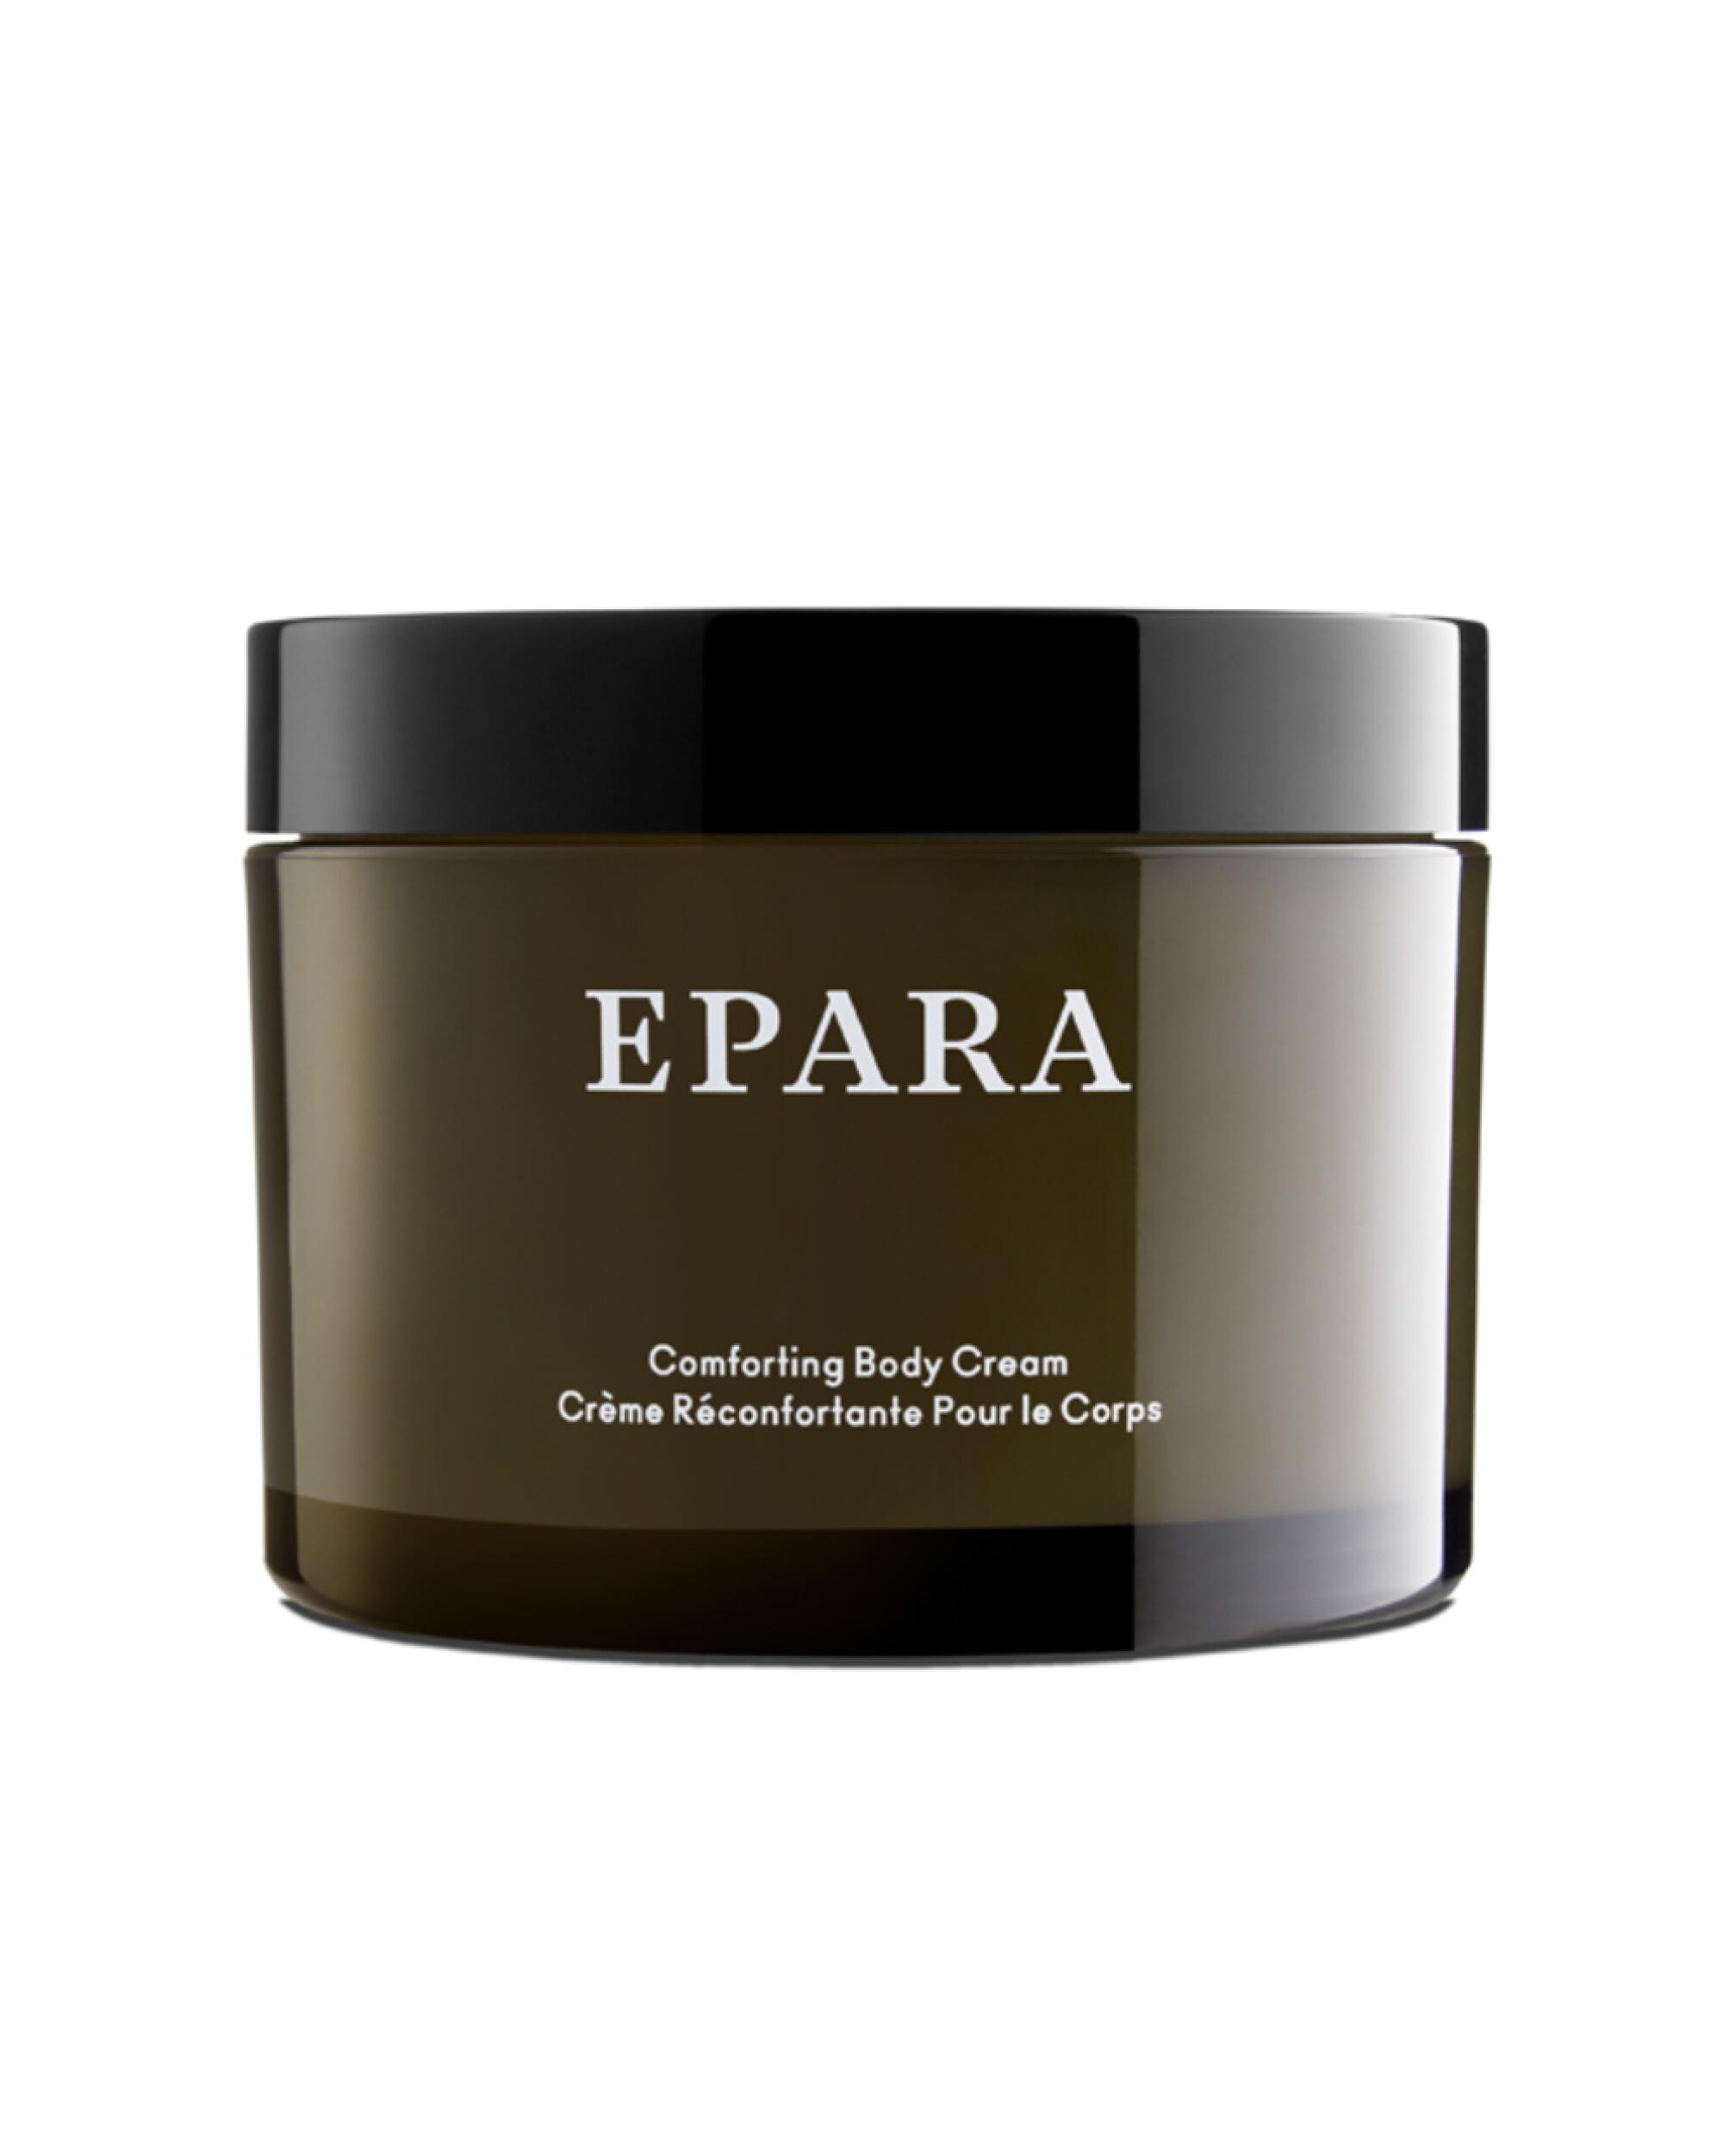 Comforting body cream by Epara